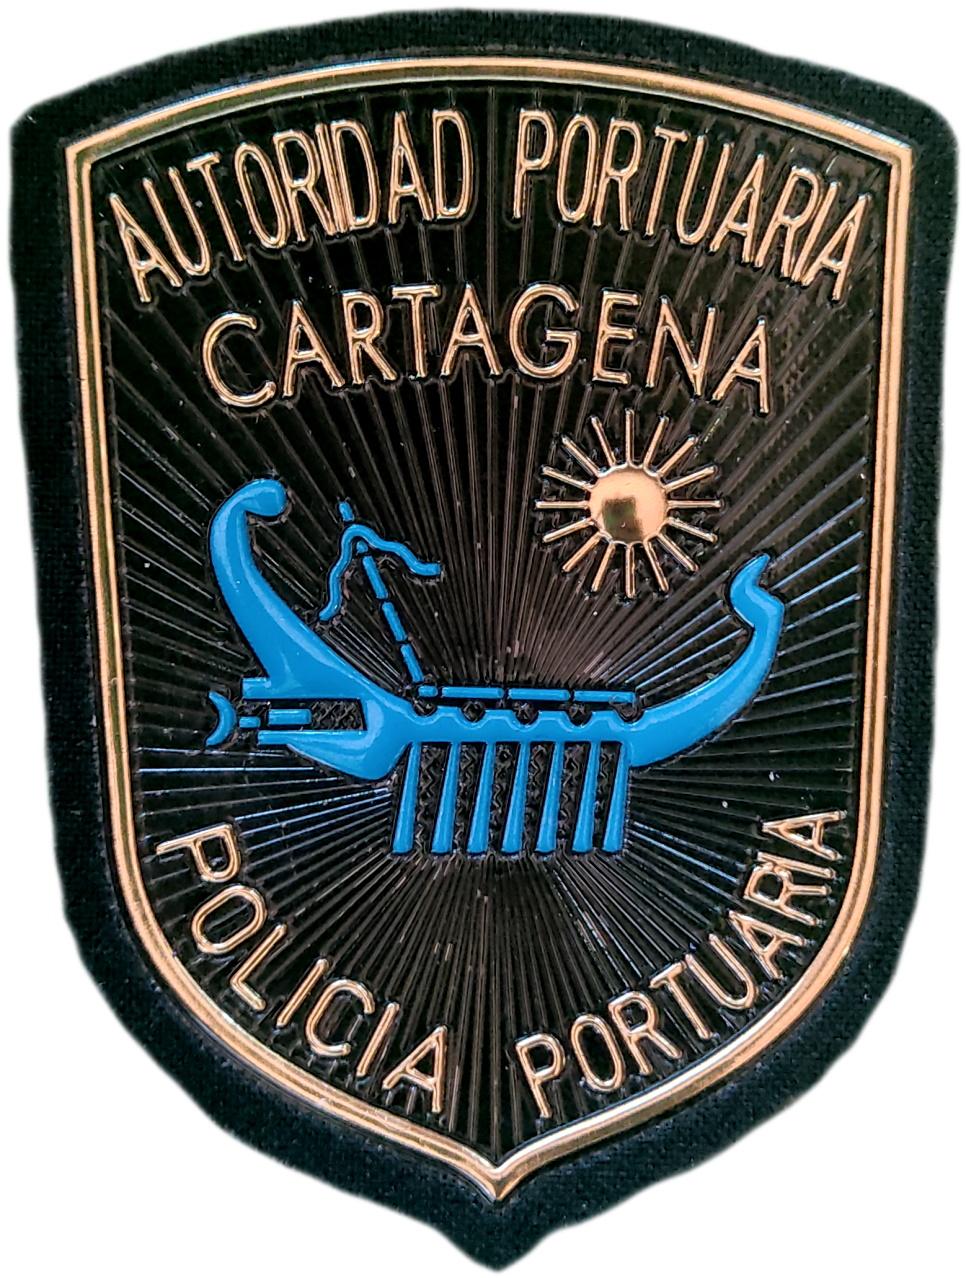 Policía Autoridad Portuaria de Cartagena parche insignia emblema distintivo 